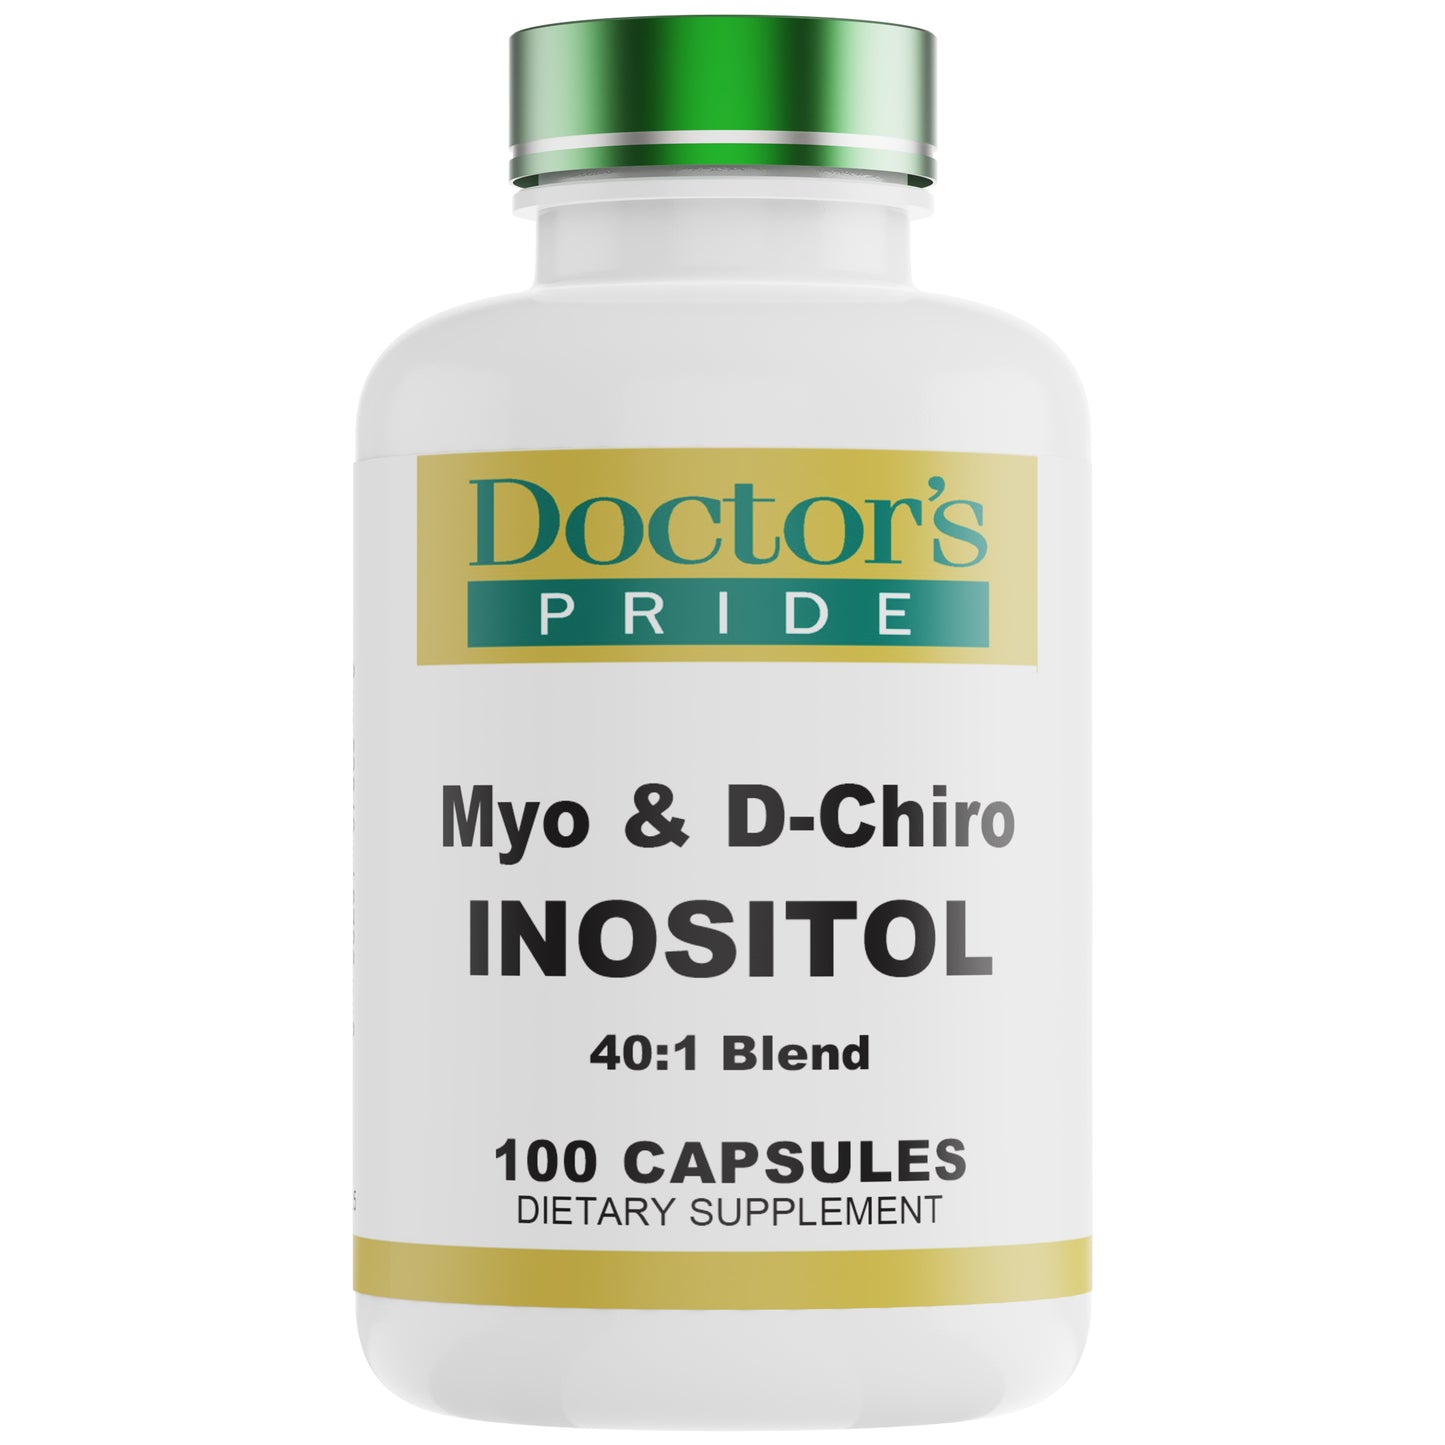 Myo & D-Chiro Inositol - 100 Capsules